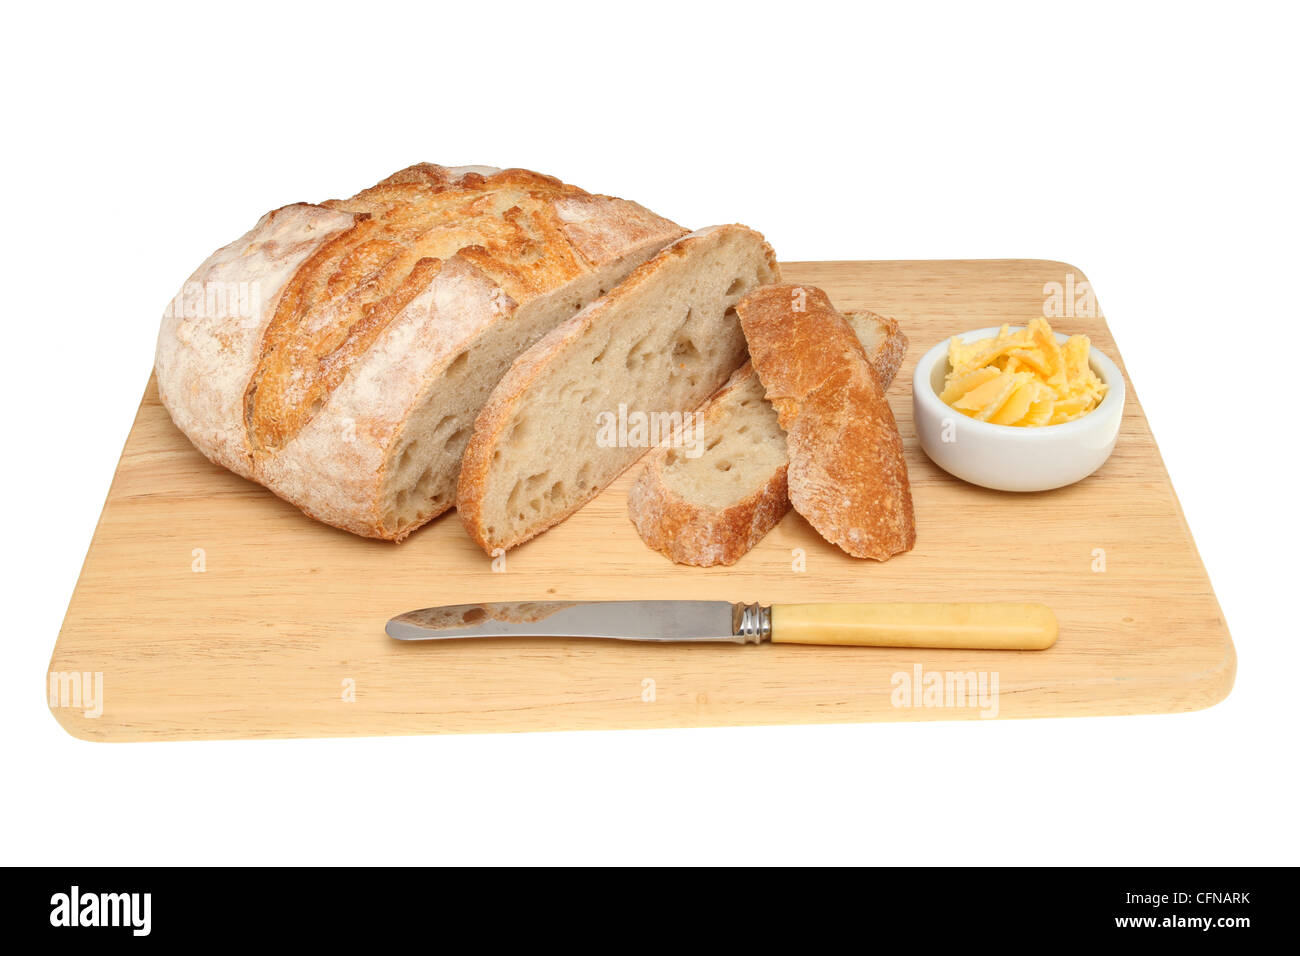 Pane rustico con taglio a fette, burro e un coltello su un tagliere da pane isolata contro bianco Foto Stock